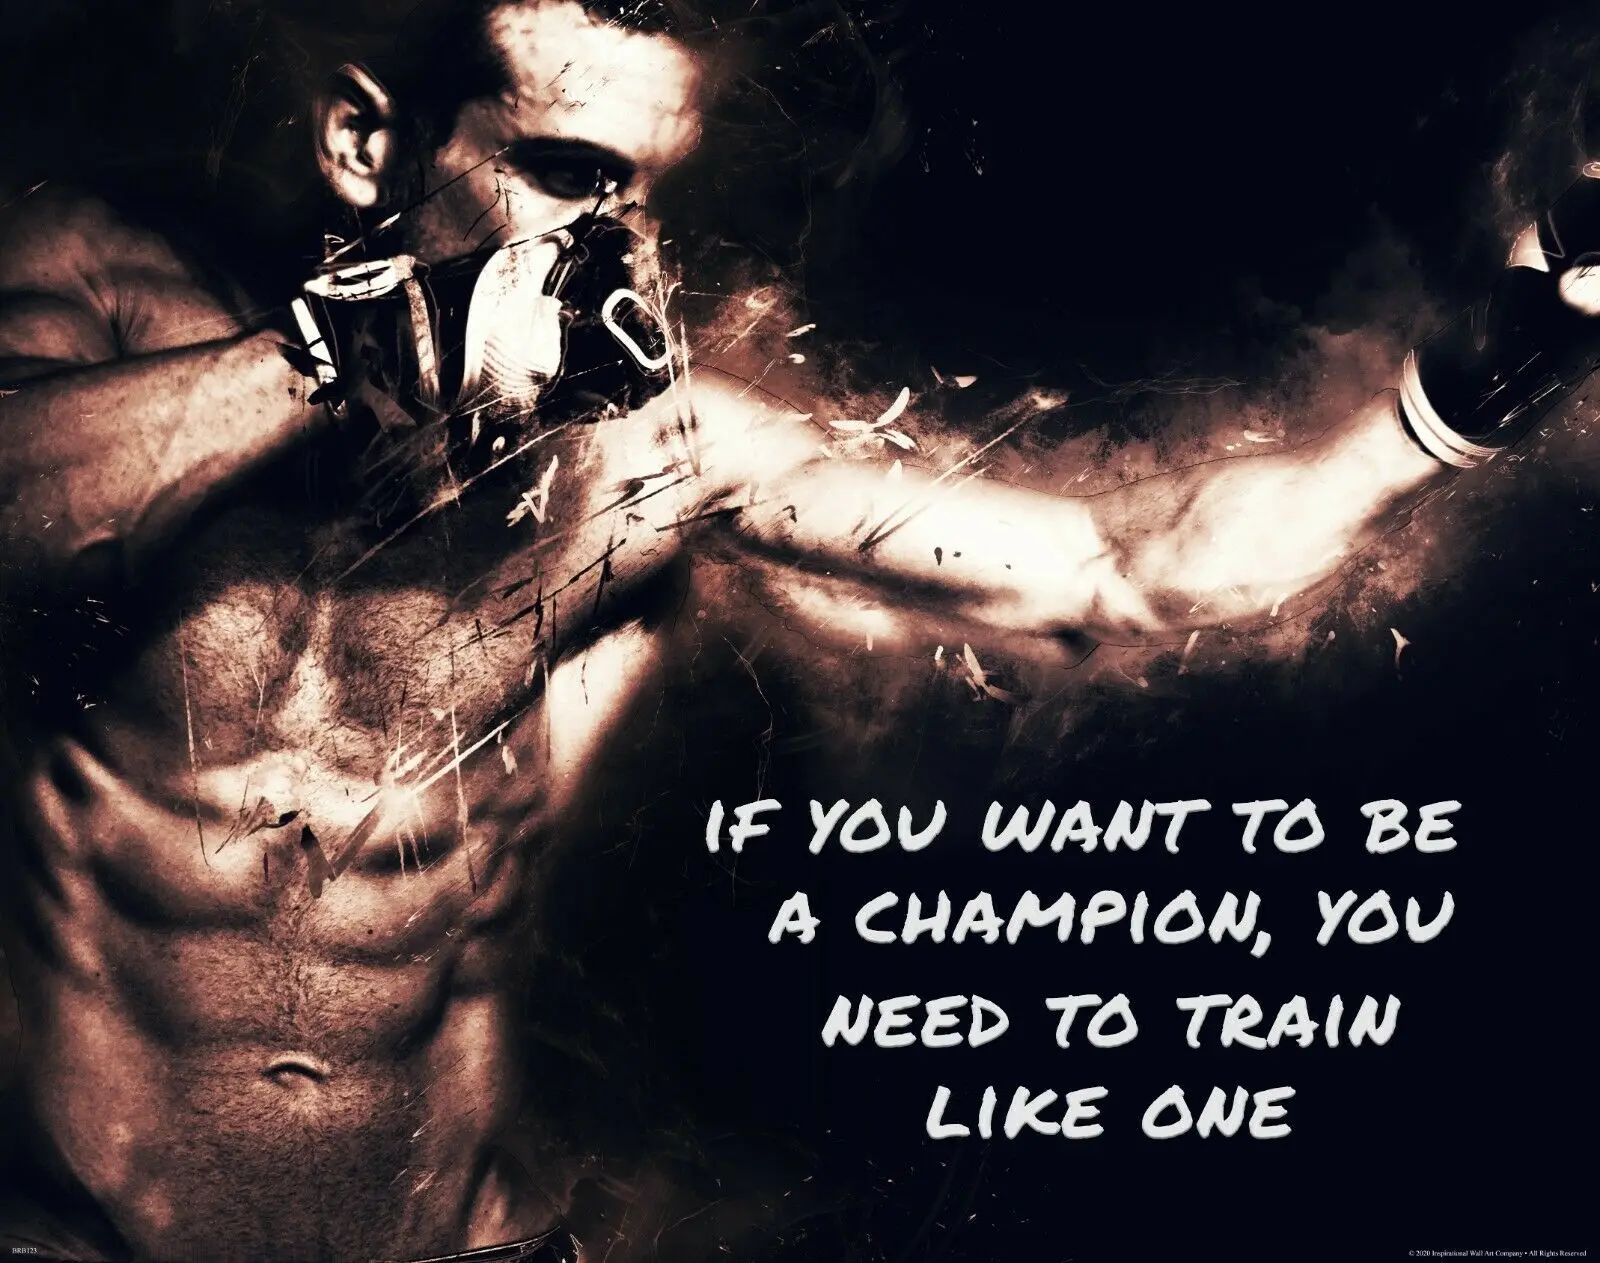 

Мотивирующее искусство для тренировки, как цитата, ММА, бокса, спортзала, Шелковый плакат с принтом 24x36 дюймов